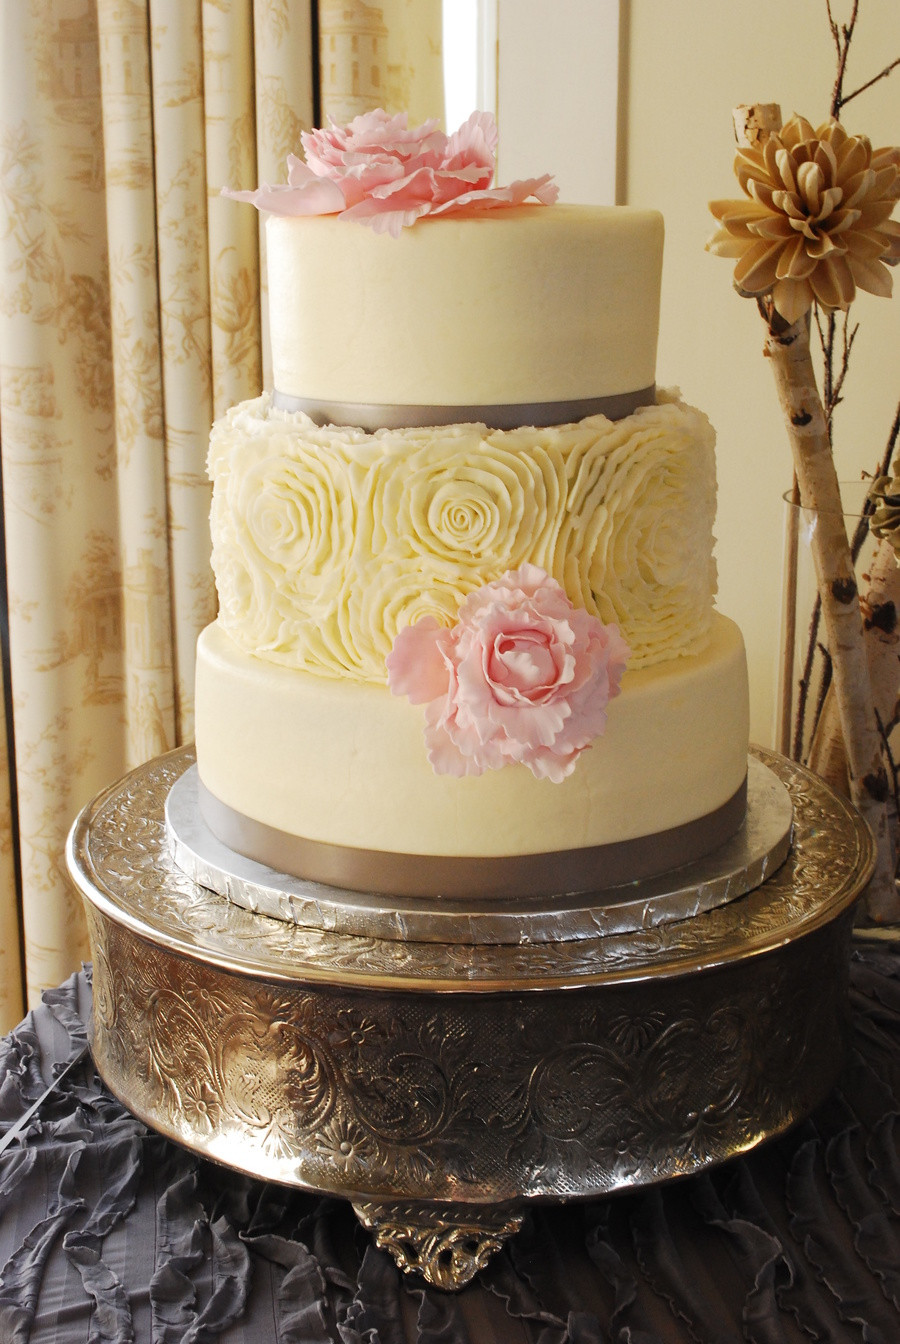 Gumpaste Flowers For Wedding Cakes
 Buttercream Rosette Wedding Cake Gumpaste Flowers